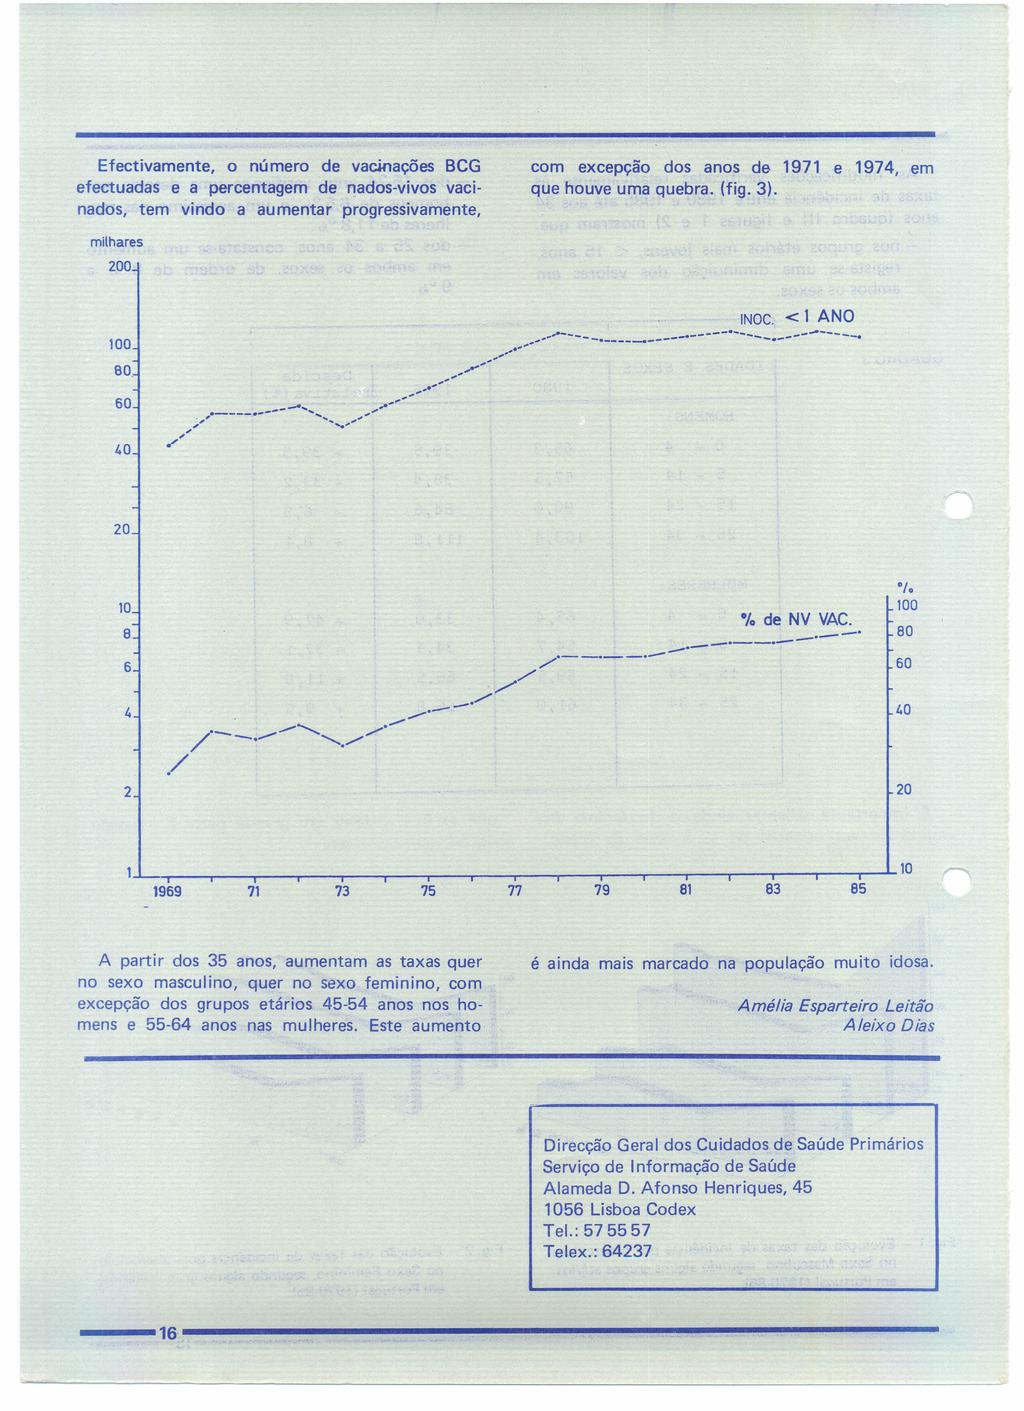 Efectivamente, númer de vacinações BCG efectuadas e a percentagem de nads-vivs vacinads, tem vind a aumentar prgressivamente, cm excepçã ds ans de 1971 e 1974, em que huve uma quebra. (fig. 3).